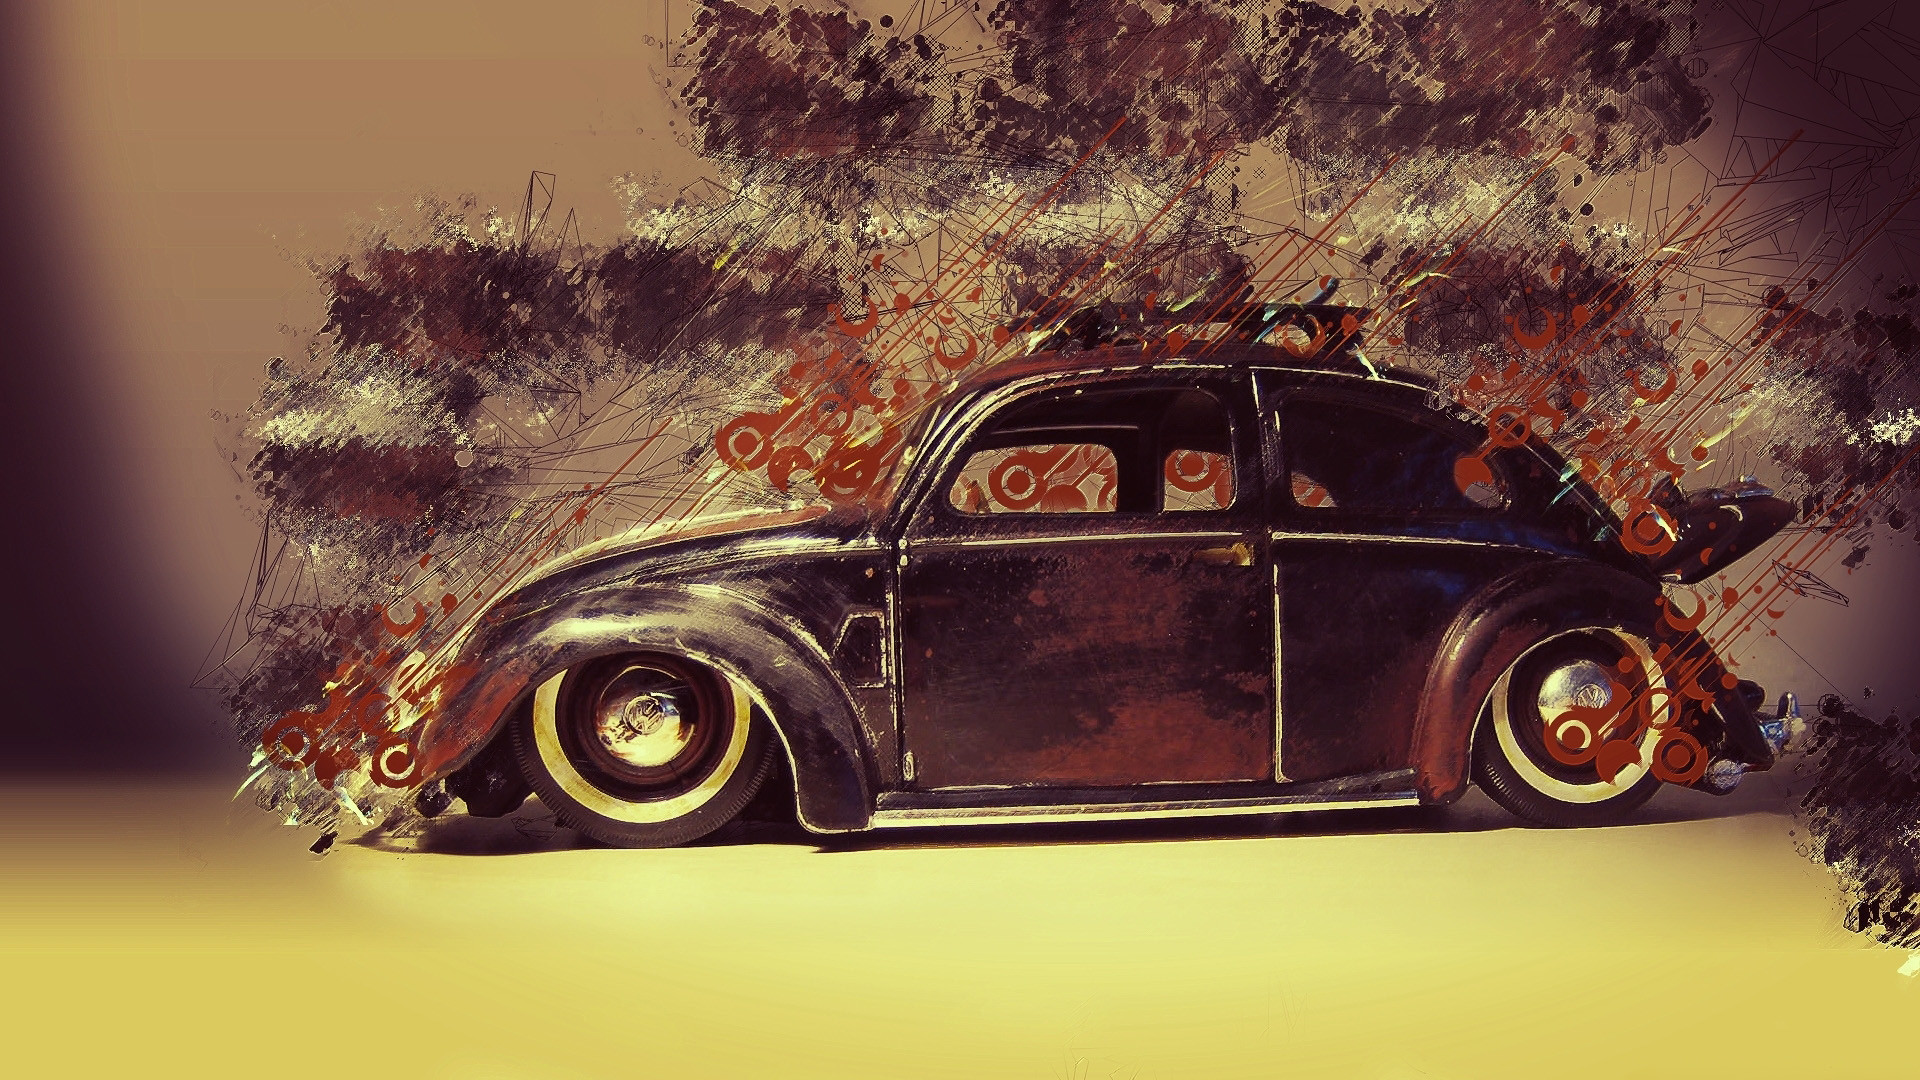 Volkswagen Beetle Wallpaper And Background Image